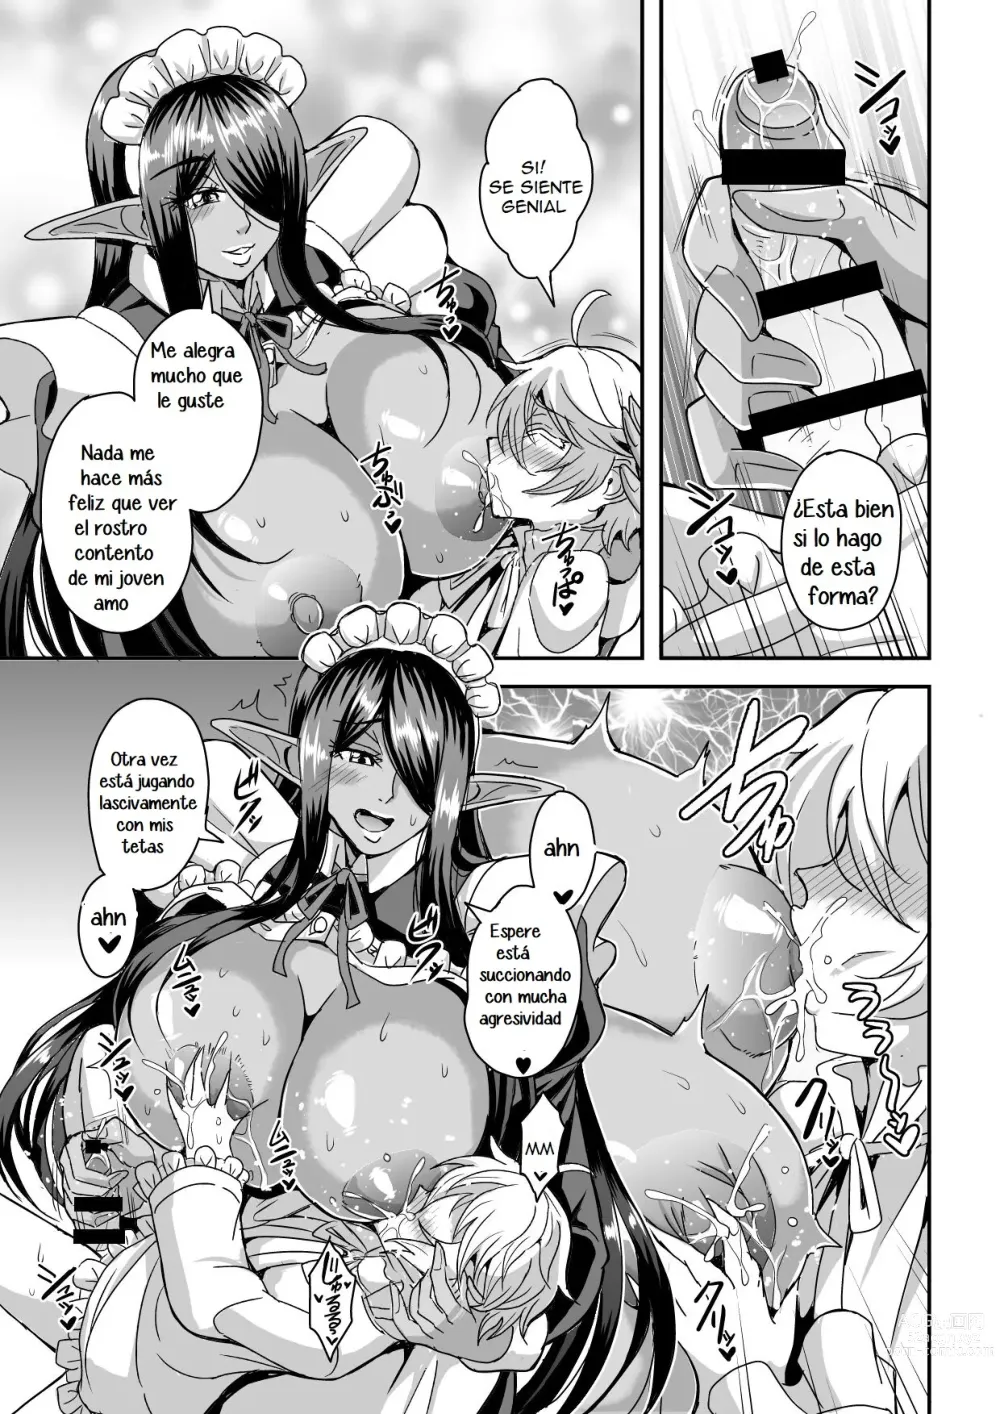 Page 10 of doujinshi Destruire mil mundos con tal de ir a la cama con mi señor una vez mas